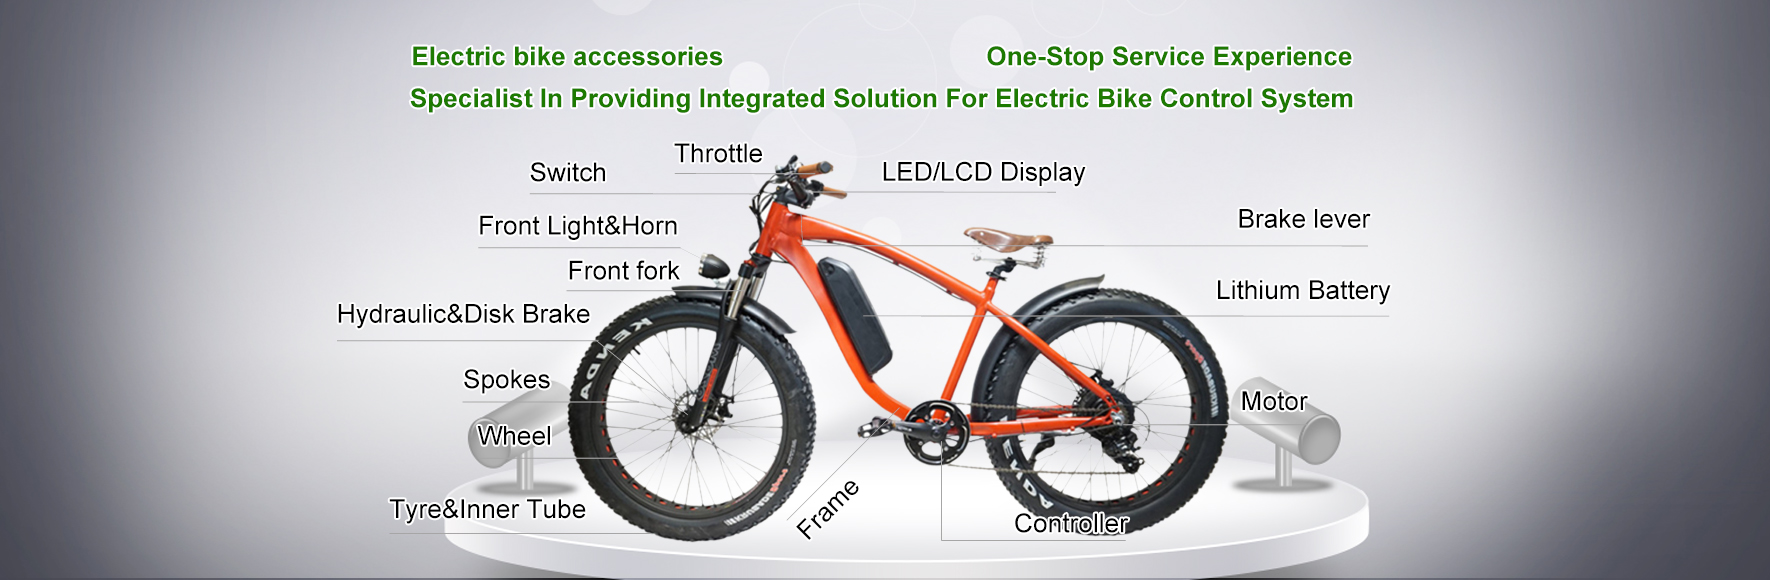 Electric bike accessories